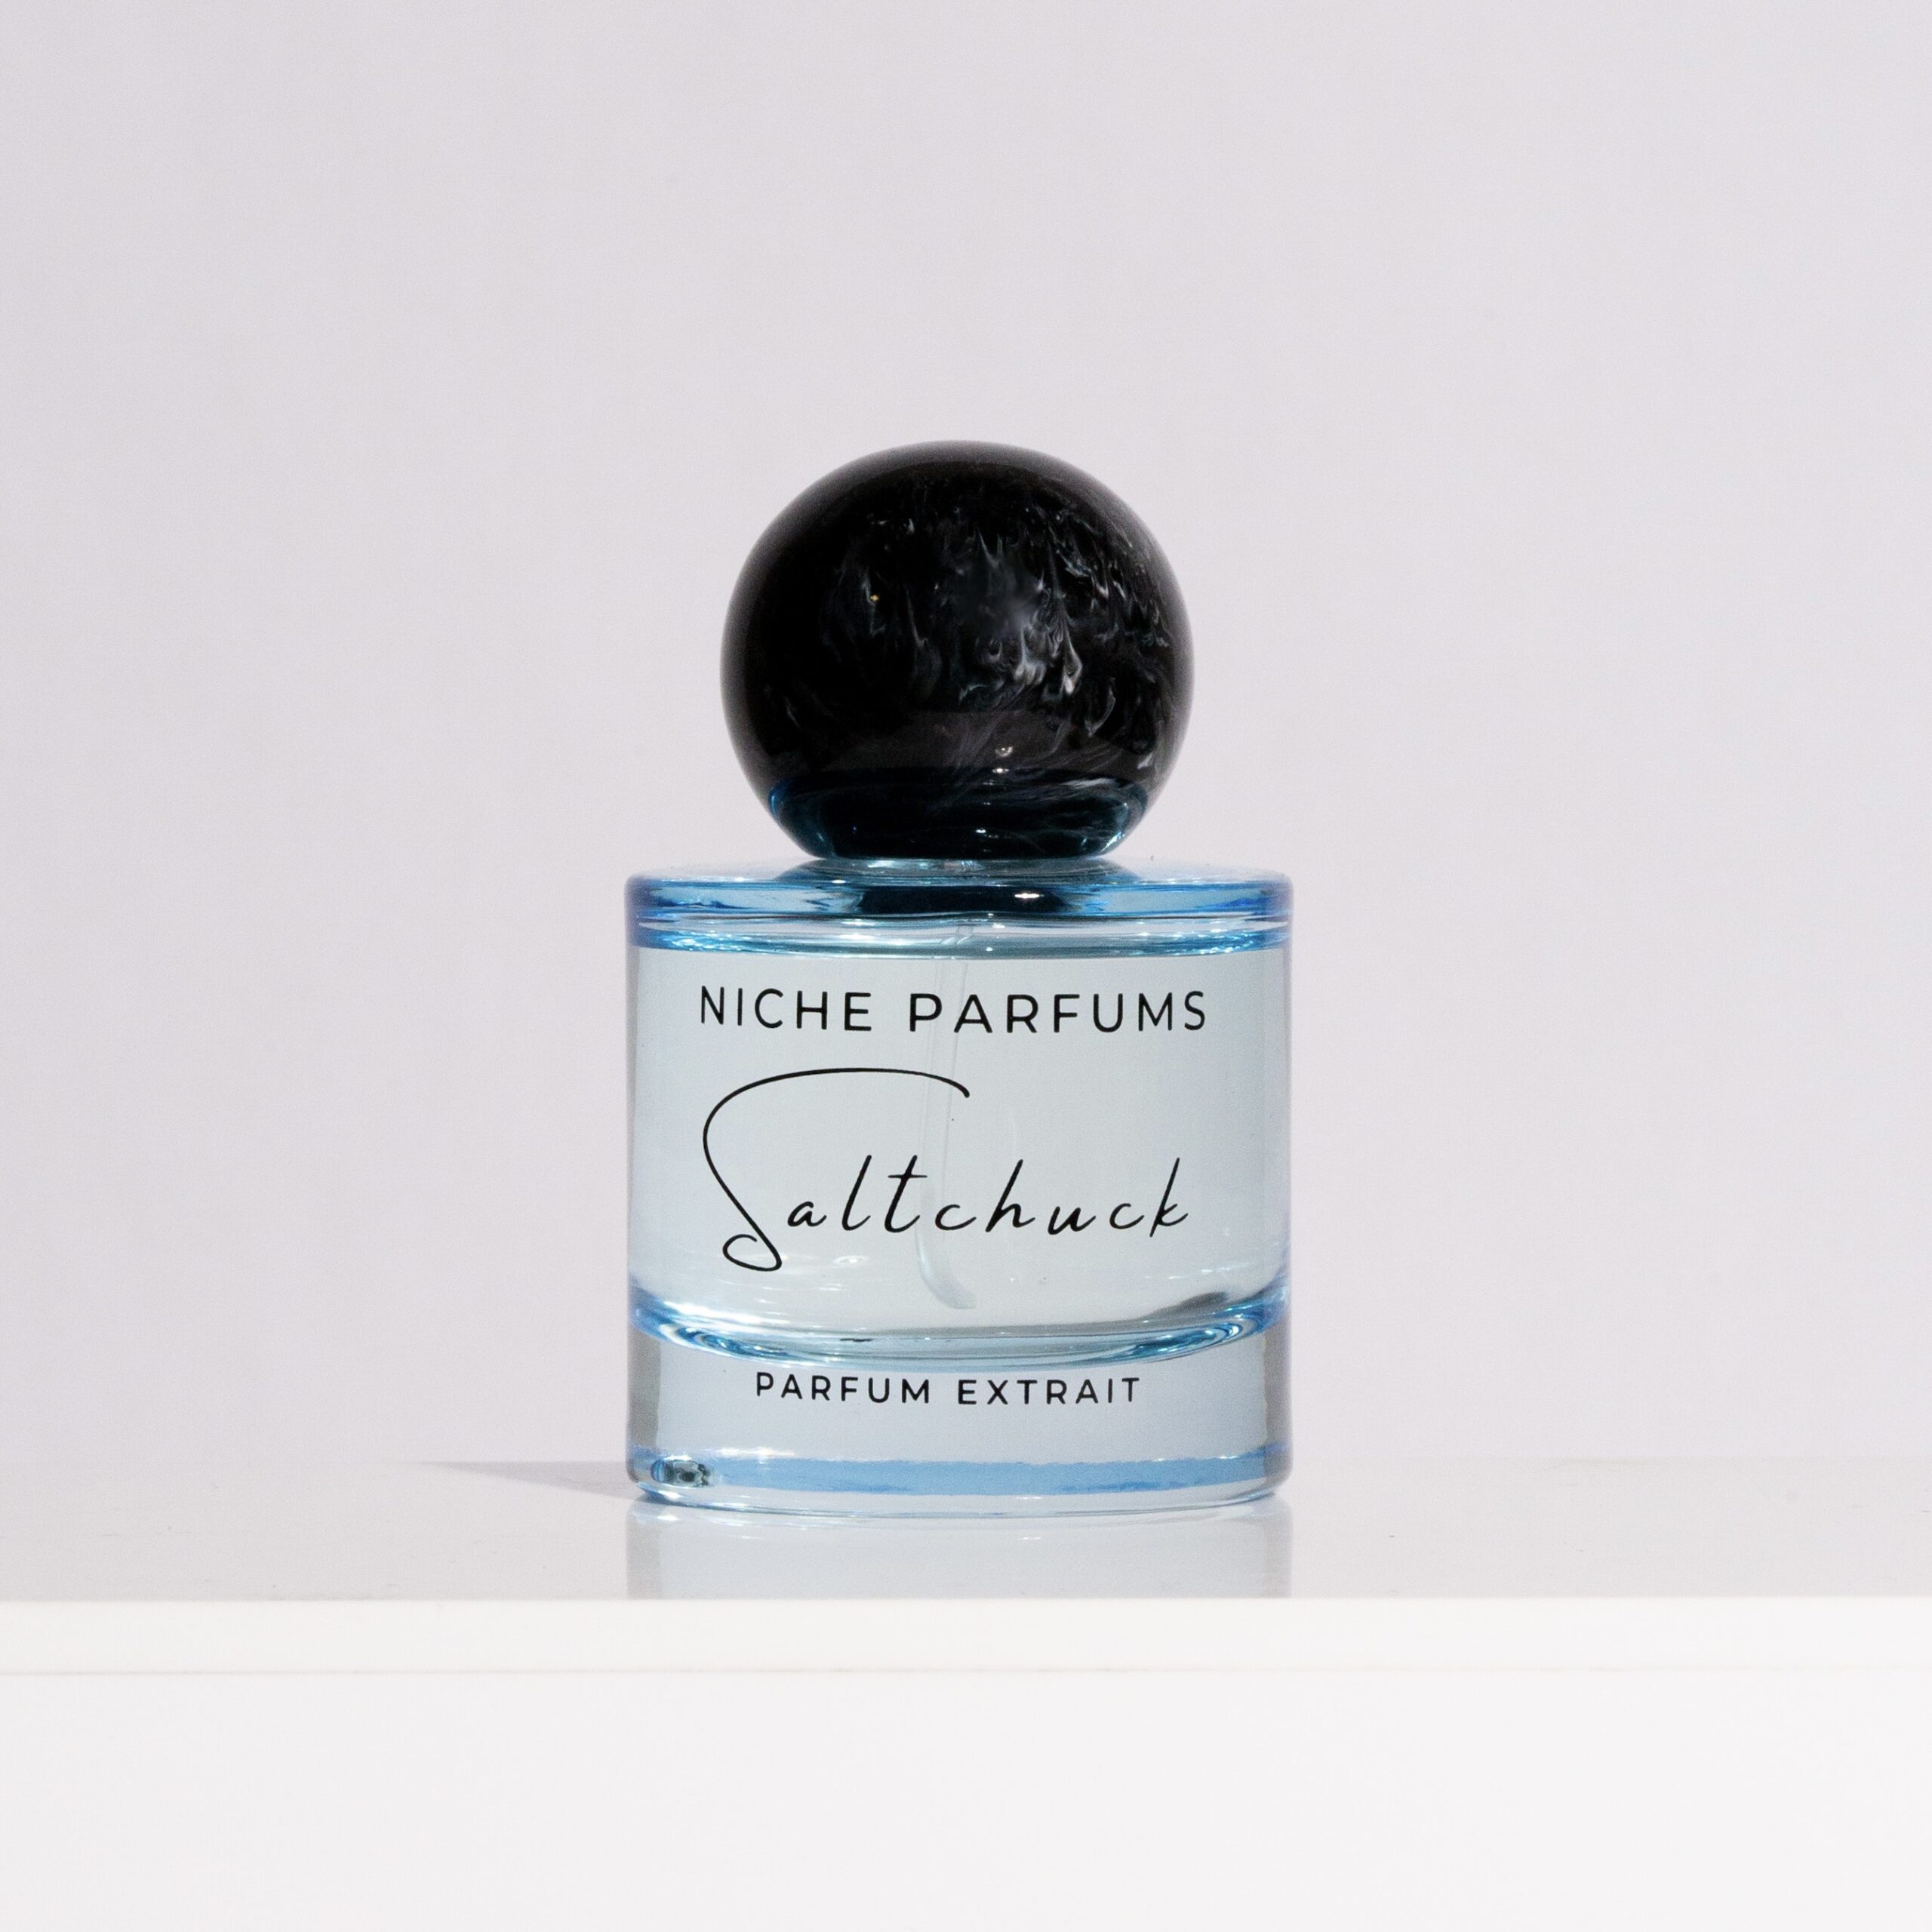 Saltchuck Parfum Extrait